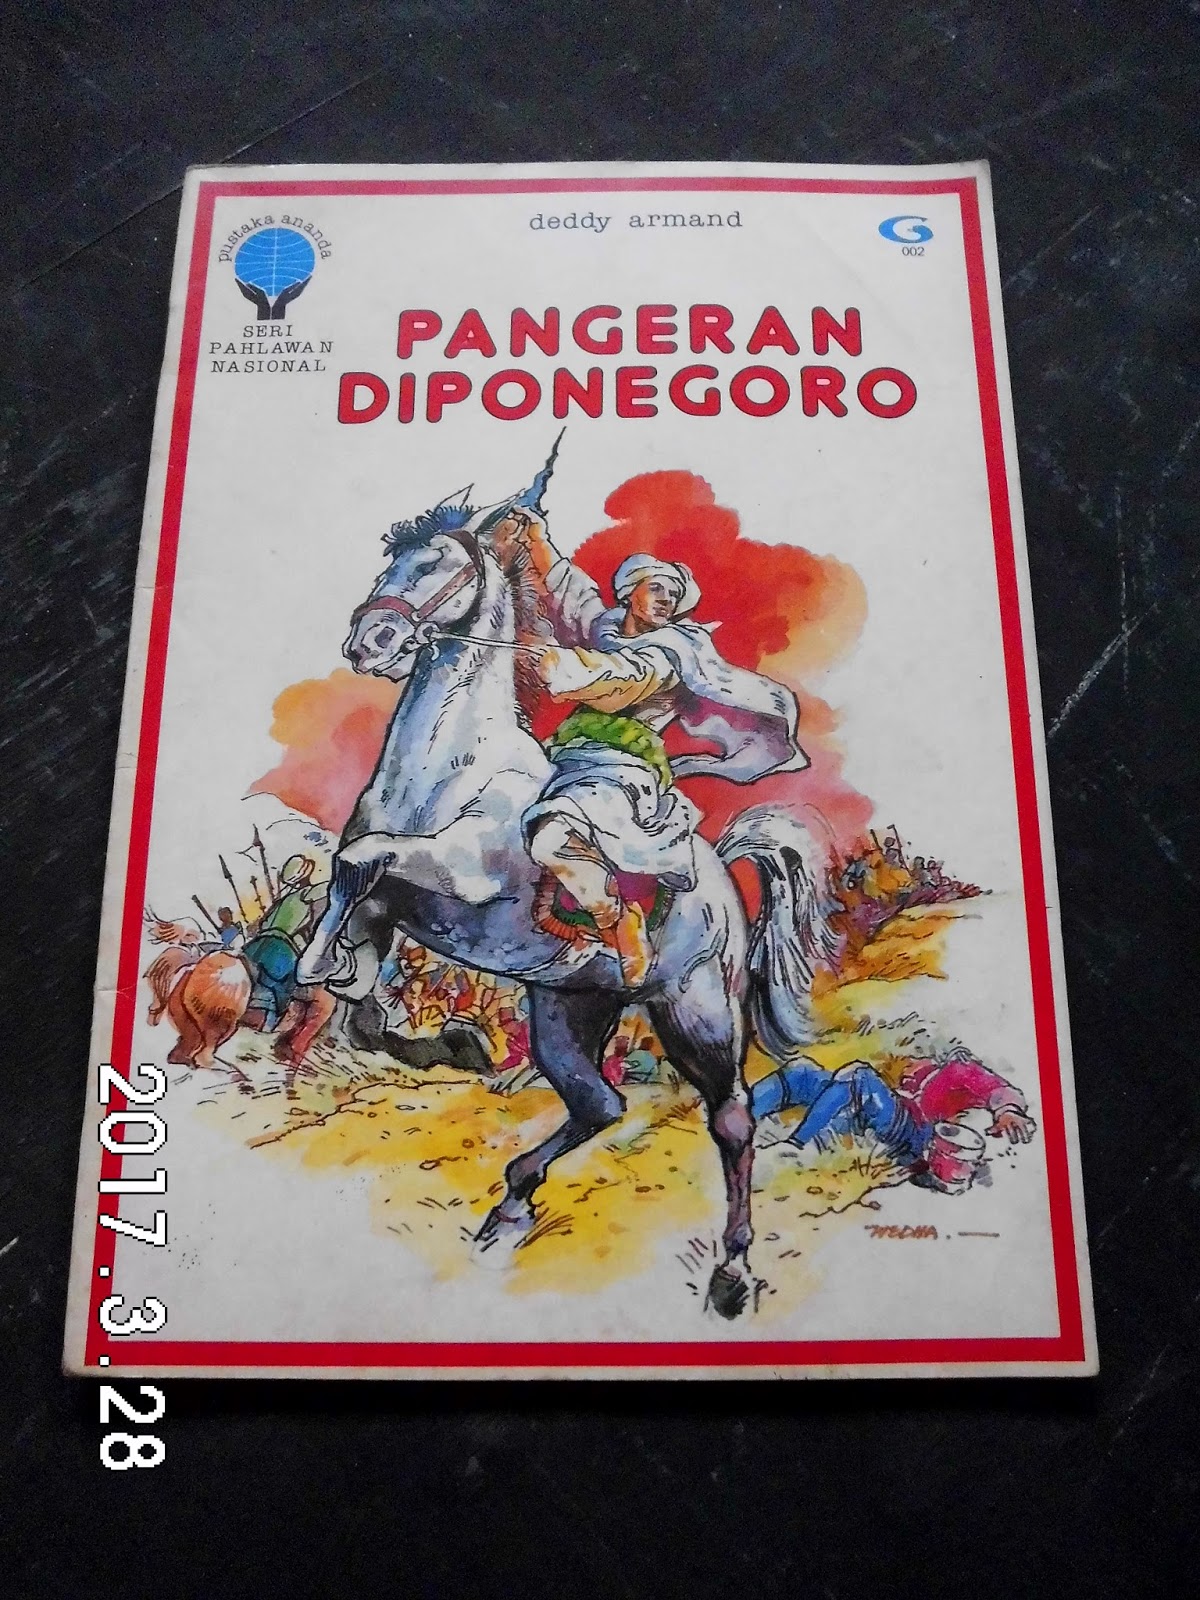 Toko Buku Bekas Online Paksrimo 2: Pangeran Diponegoro - SOLD